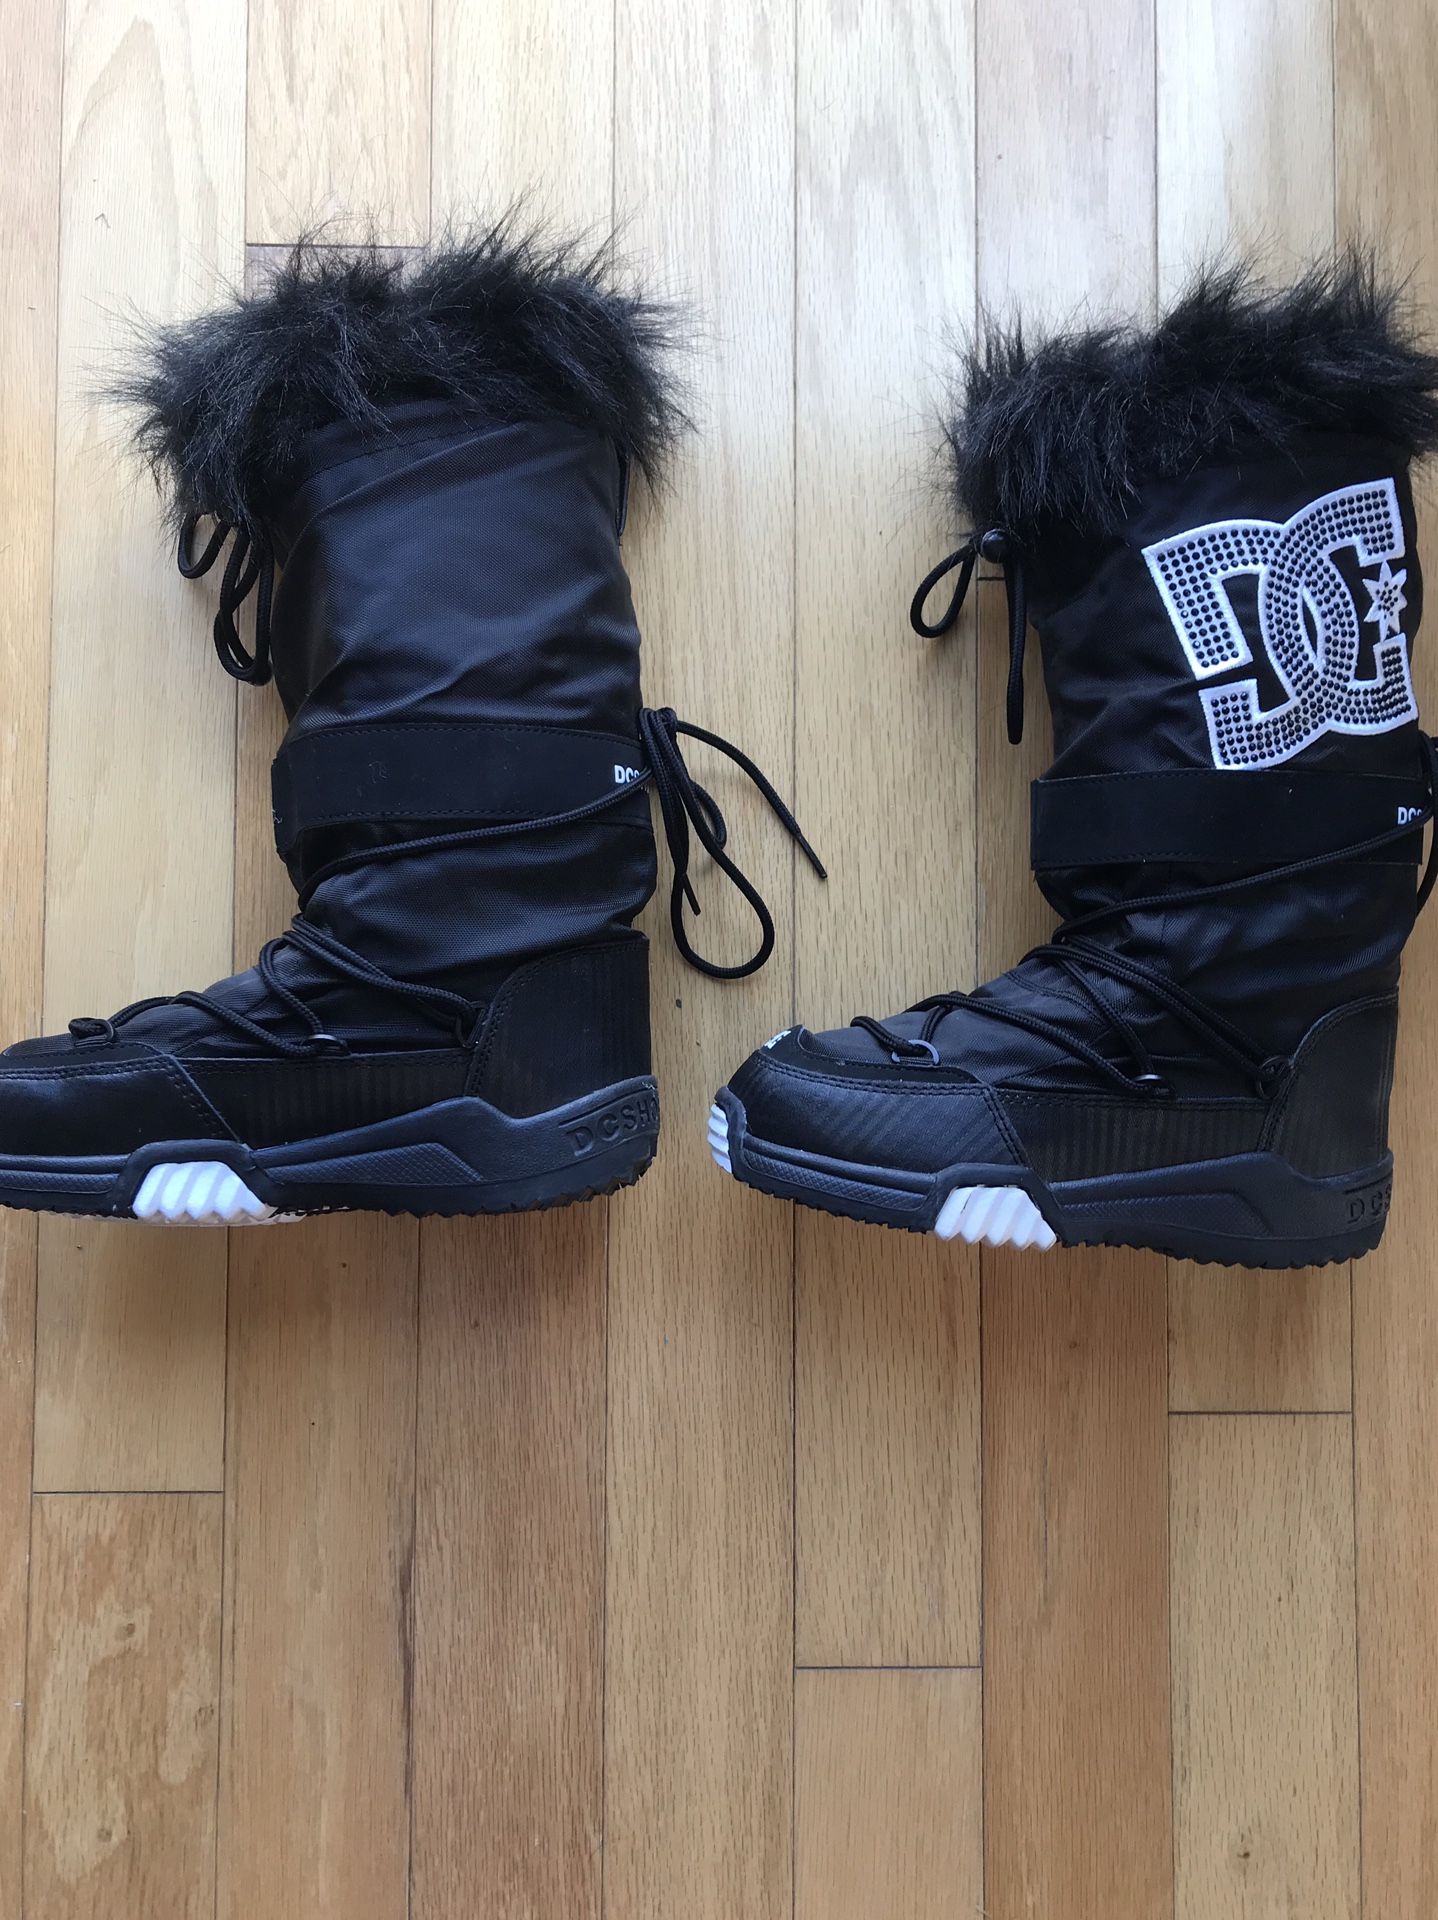 DC shoes- chalet snow boot sz 6